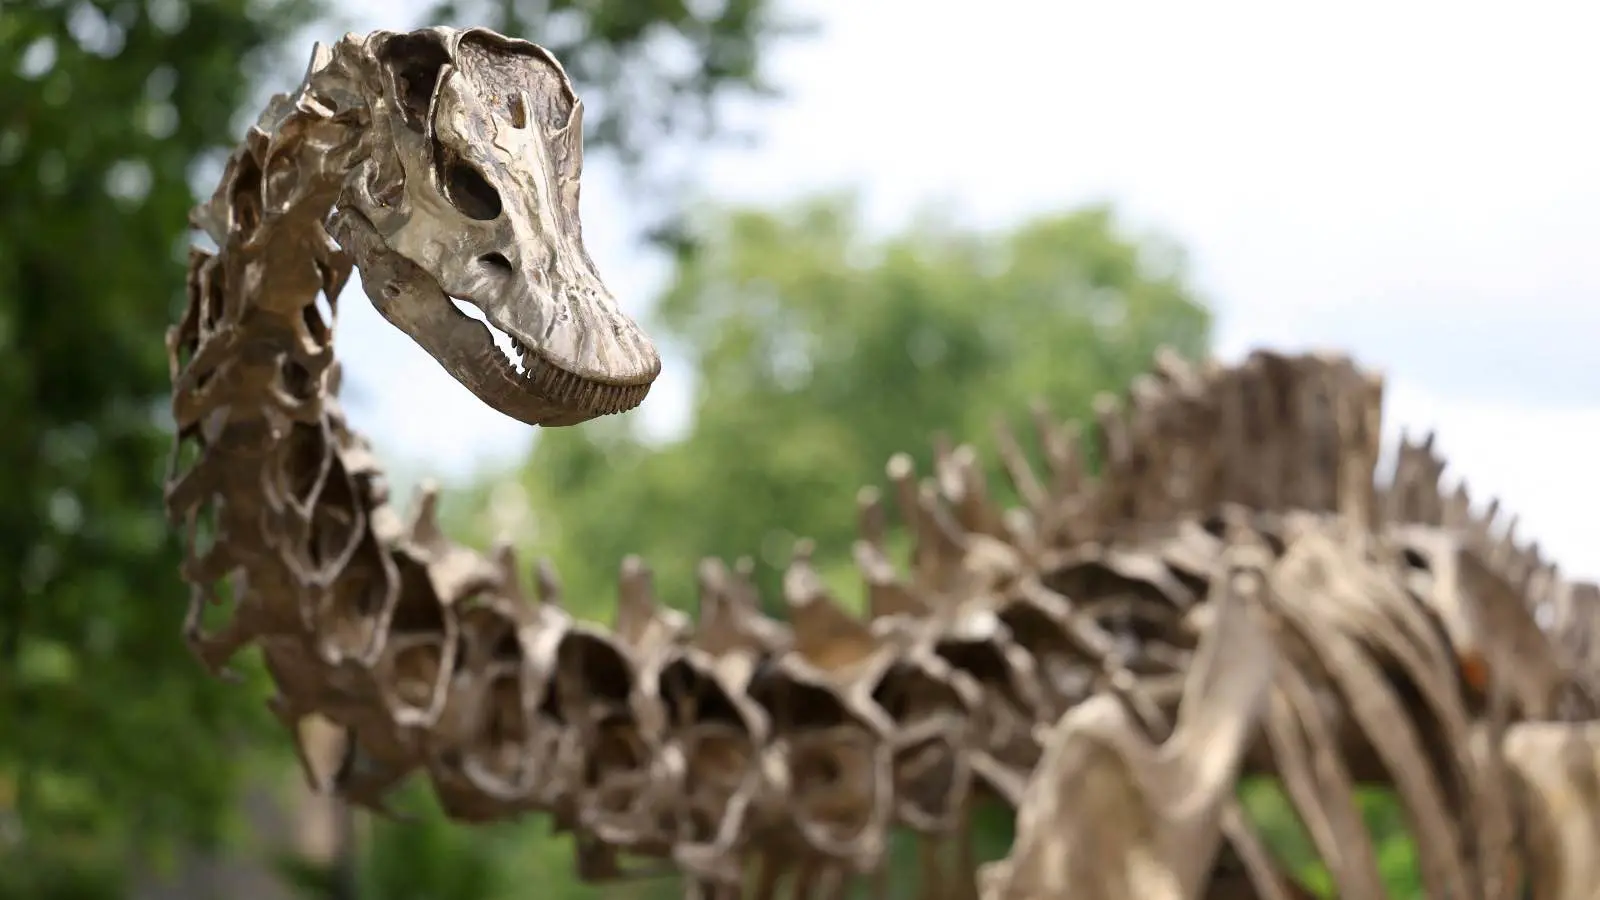 الأمطار تكشف عن متحجرة ديناصور عمرها 200 مليون عام في البرازيل